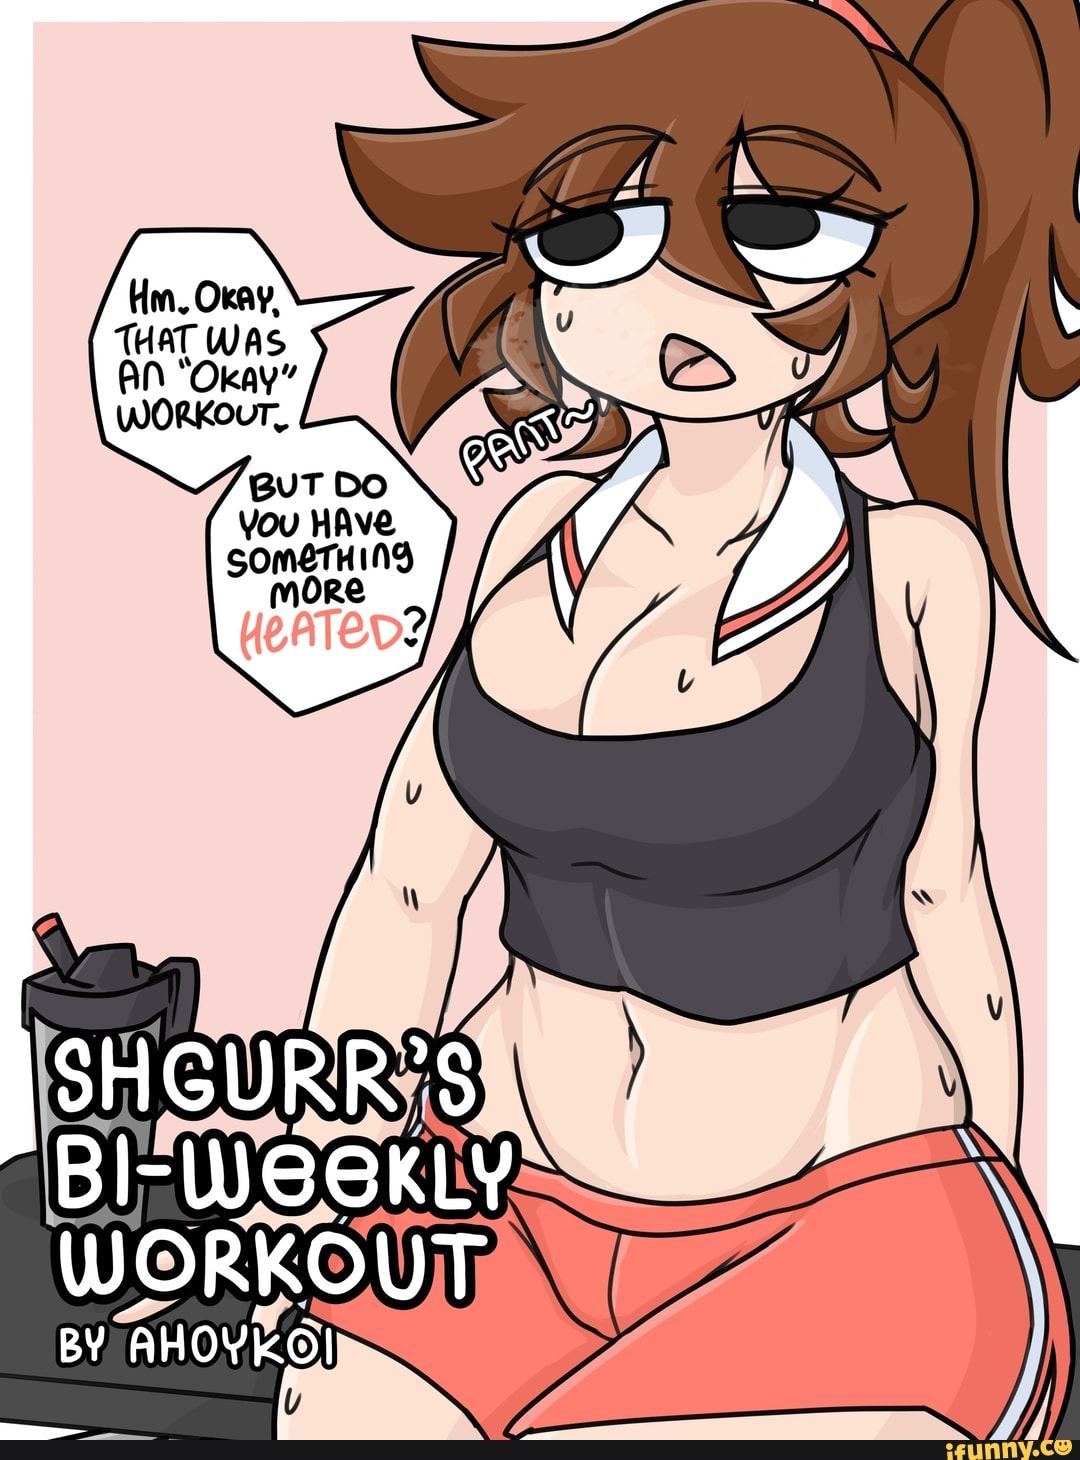 Shgurr' bi-weekly workout by ahoykoi.